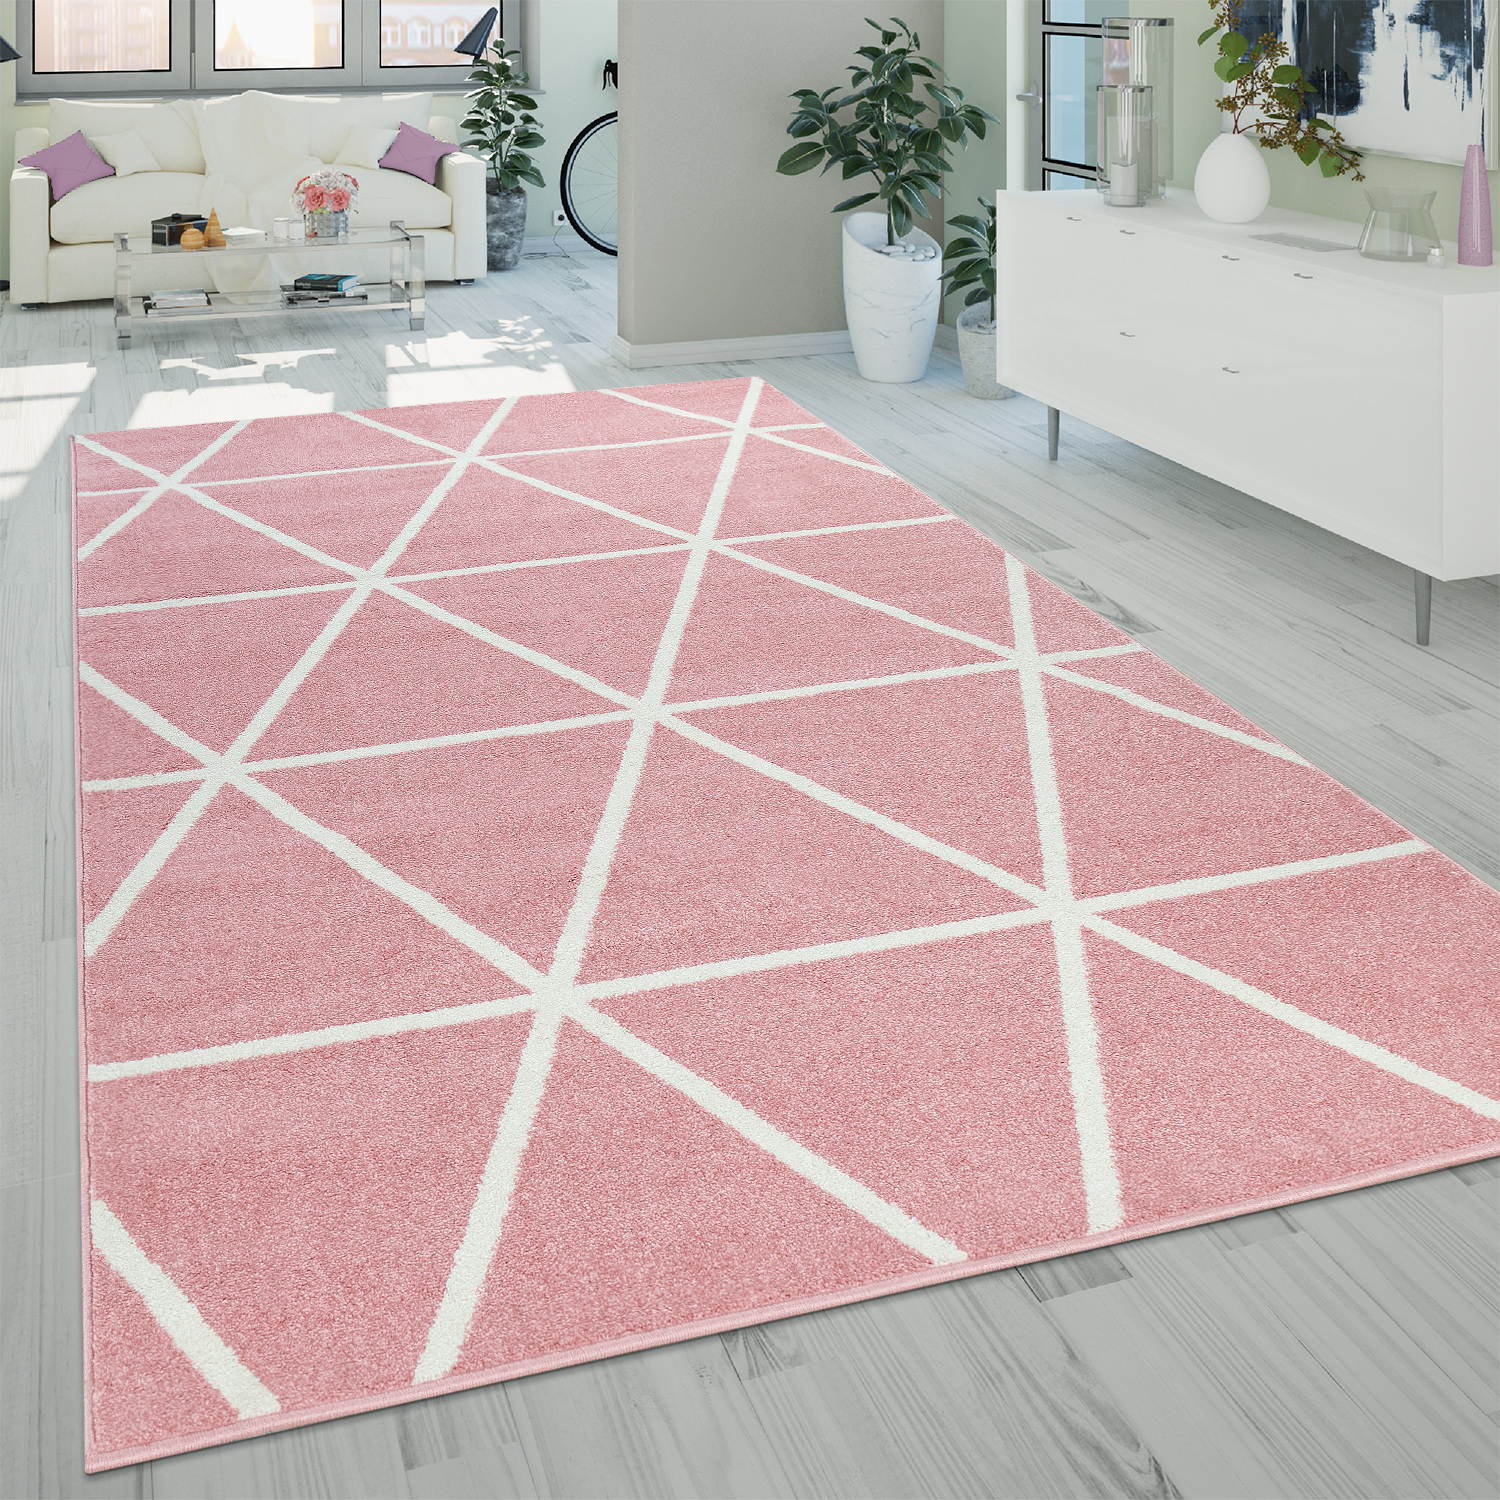 Kurzflor Soft Teppich Rosa Pink für Wohnzimmer moderne Wellen Linien Muster 